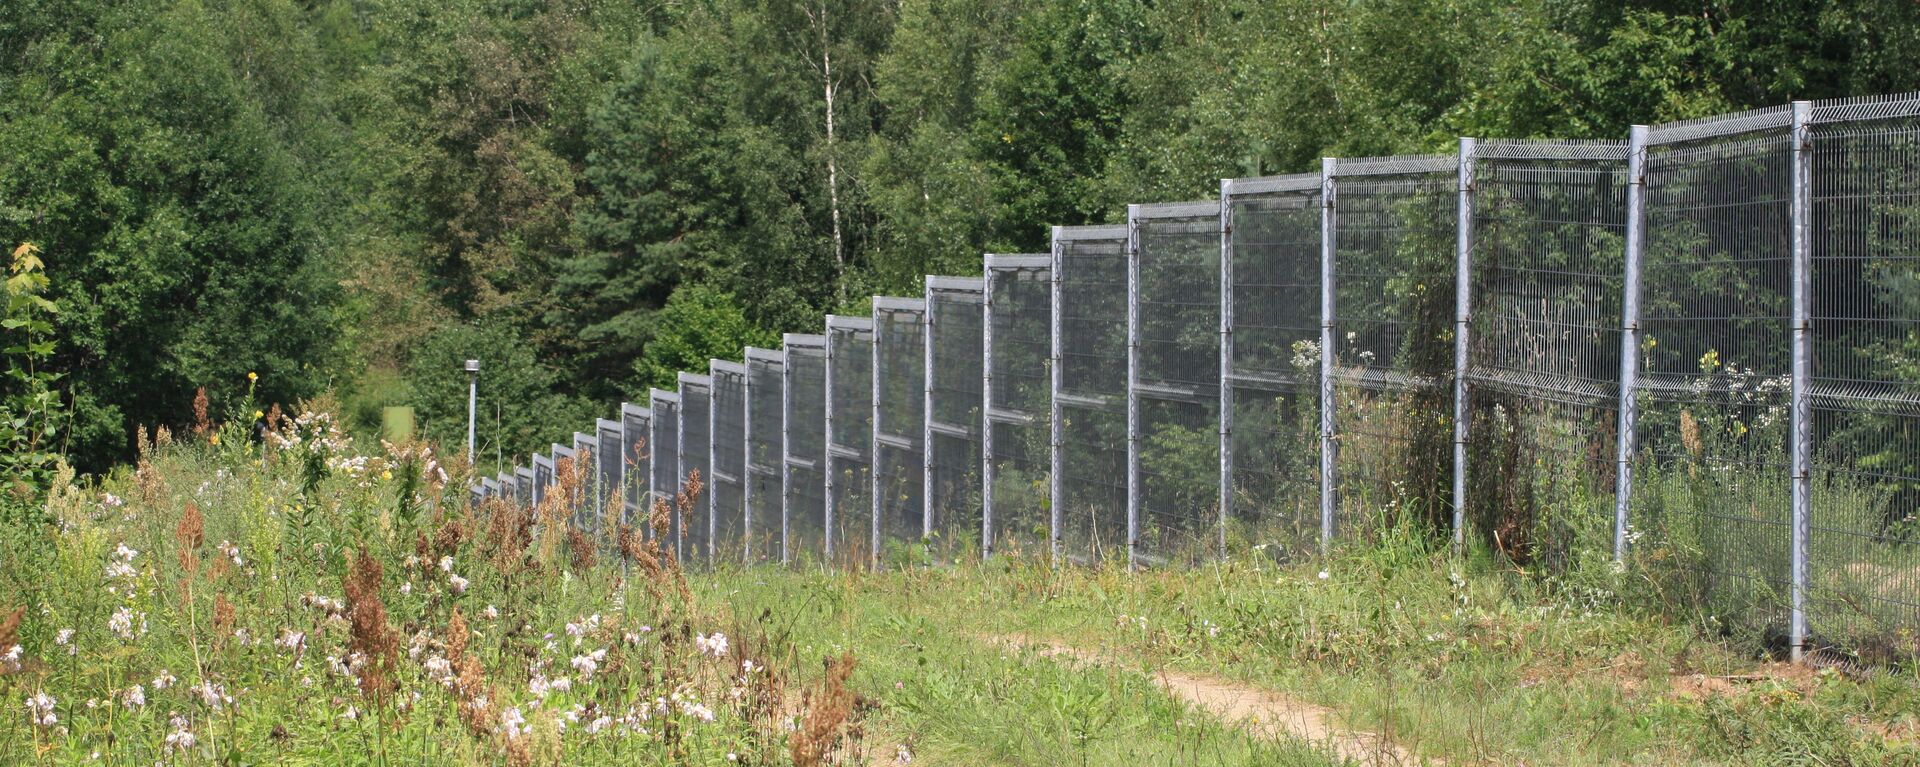 Забор вдоль разделительной черты на границе - Sputnik Литва, 1920, 12.06.2021